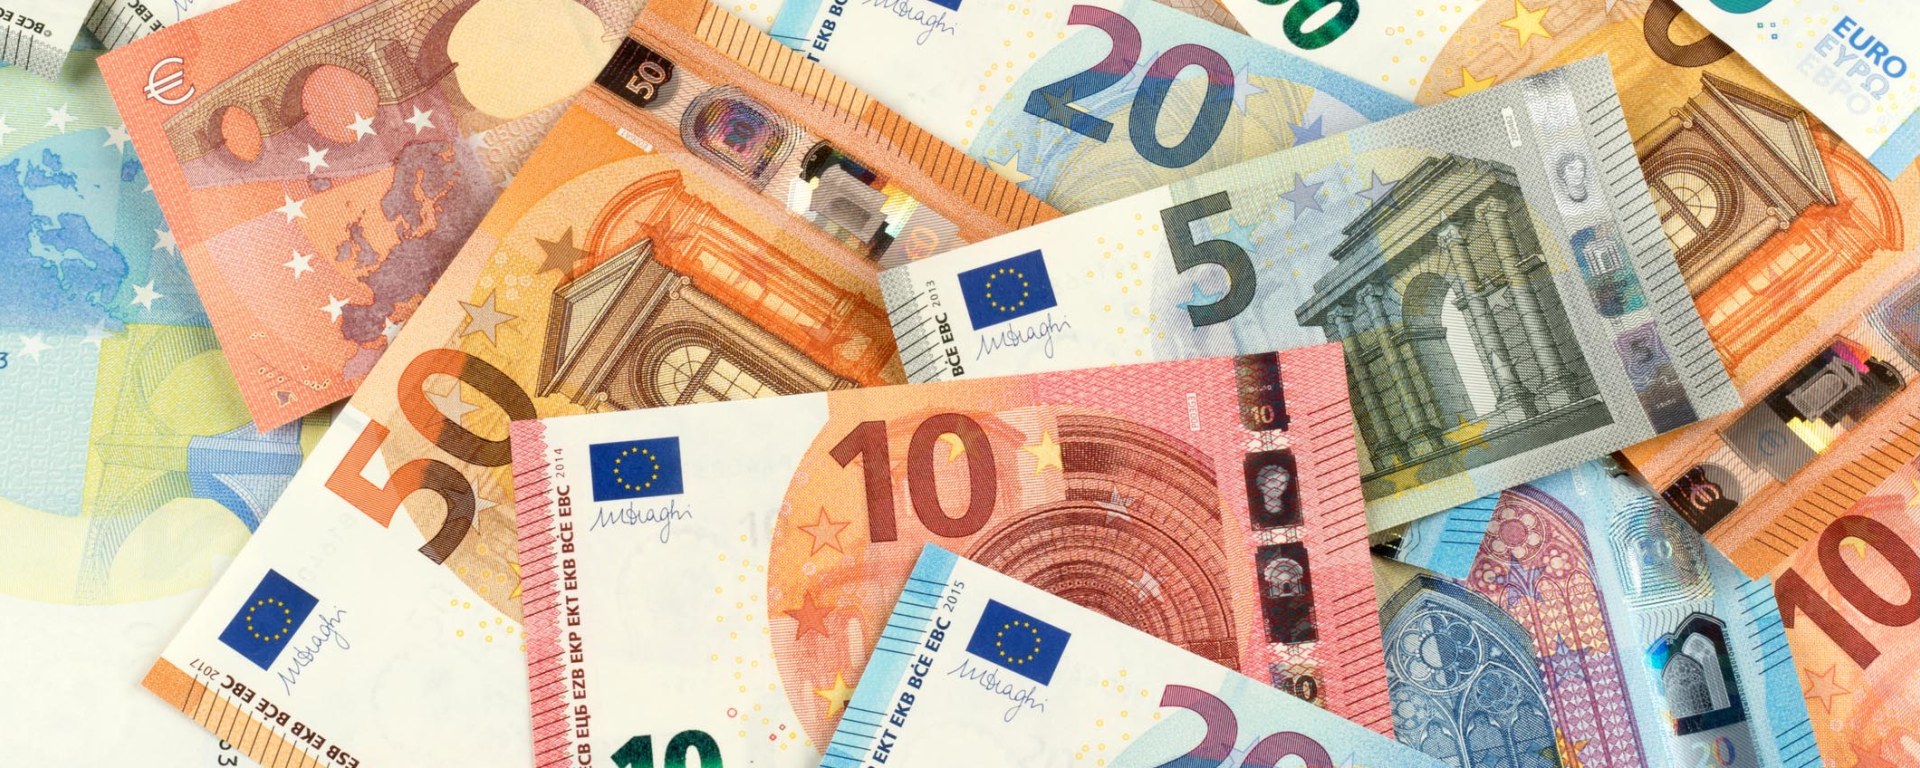 Une pile de billets en euros symbolise une manière efficace de restituer du capital aux actionnaires